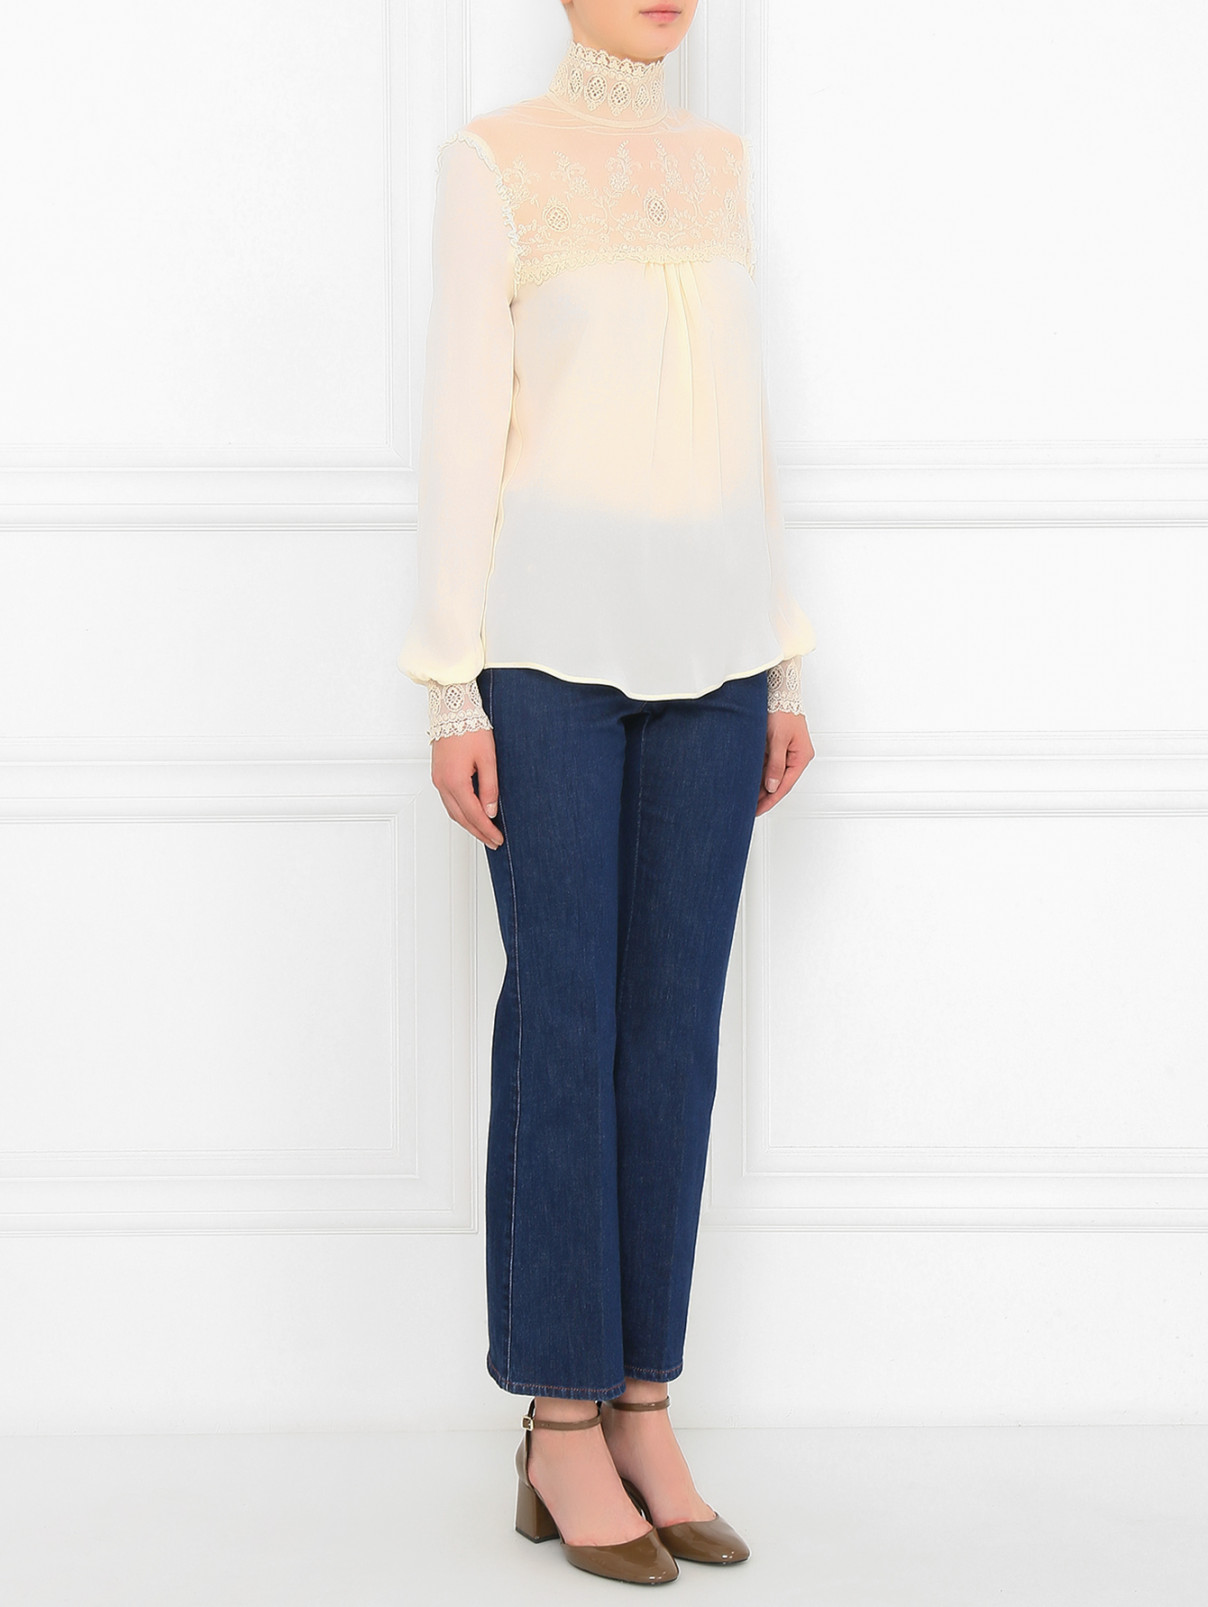 Блуза из шелка с кружевной вставкой Veronique Branquinho  –  Модель Общий вид  – Цвет:  Белый